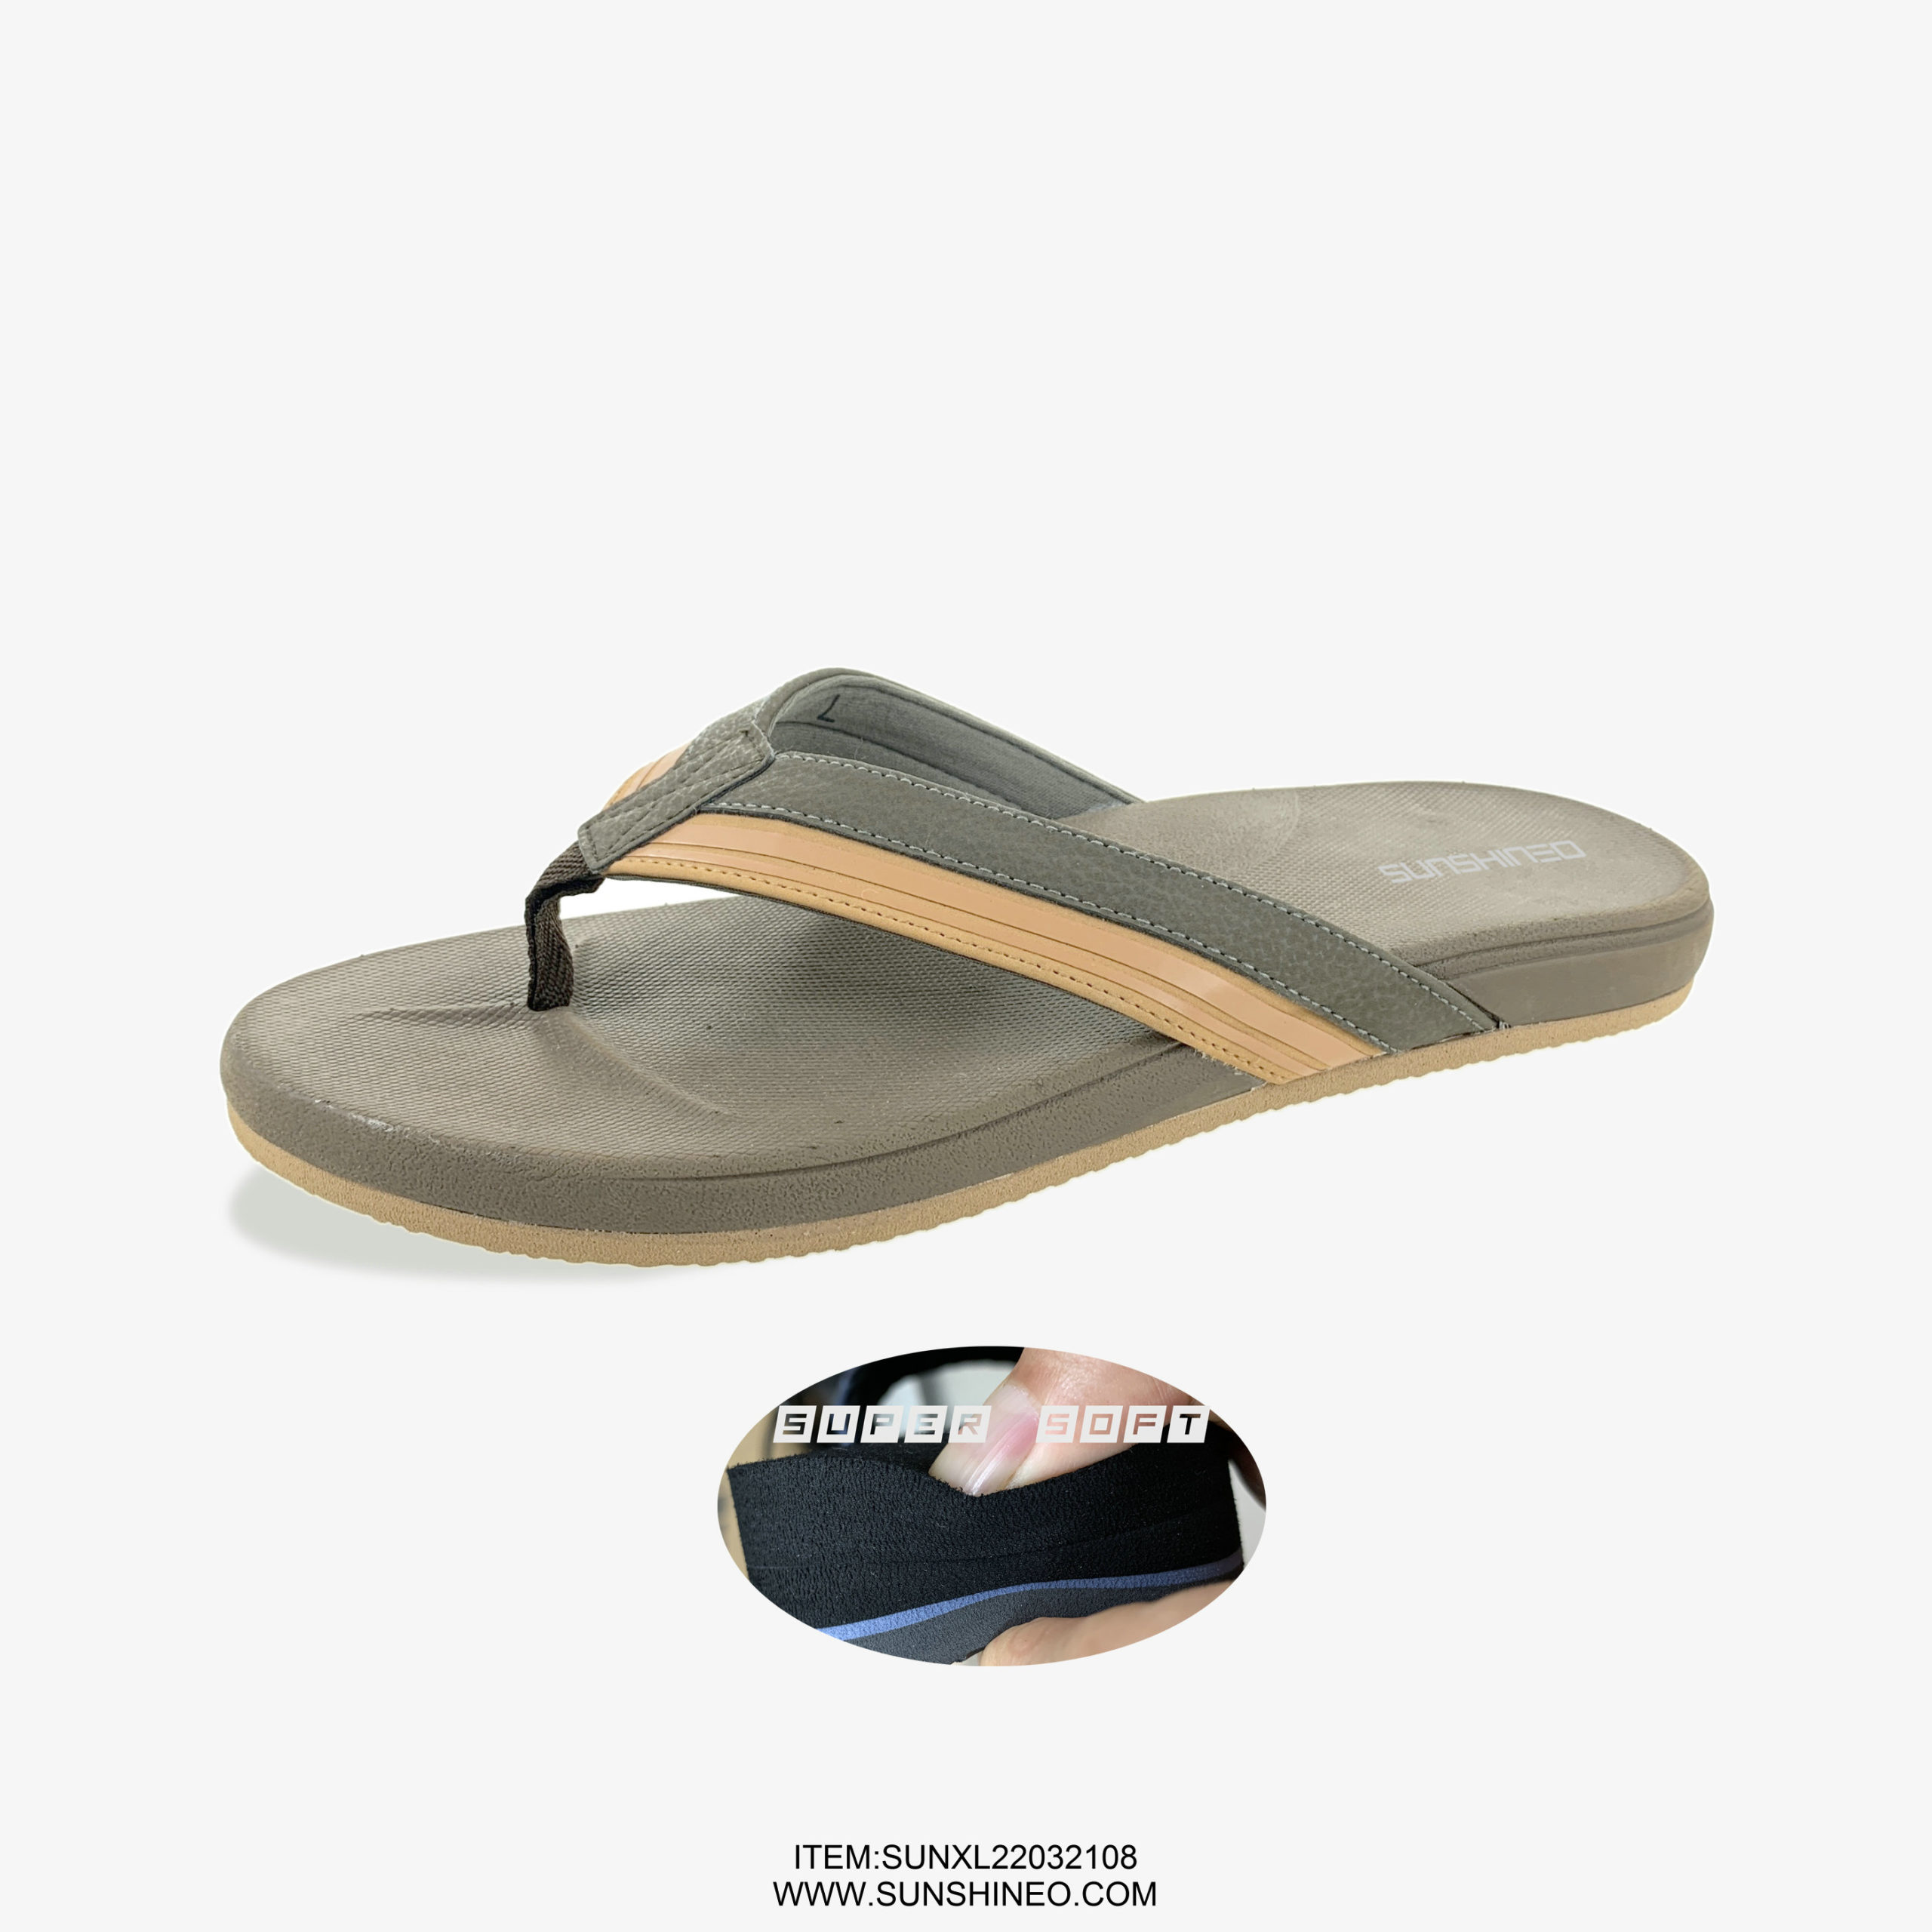 SUNXL22032108 flip flop sandals